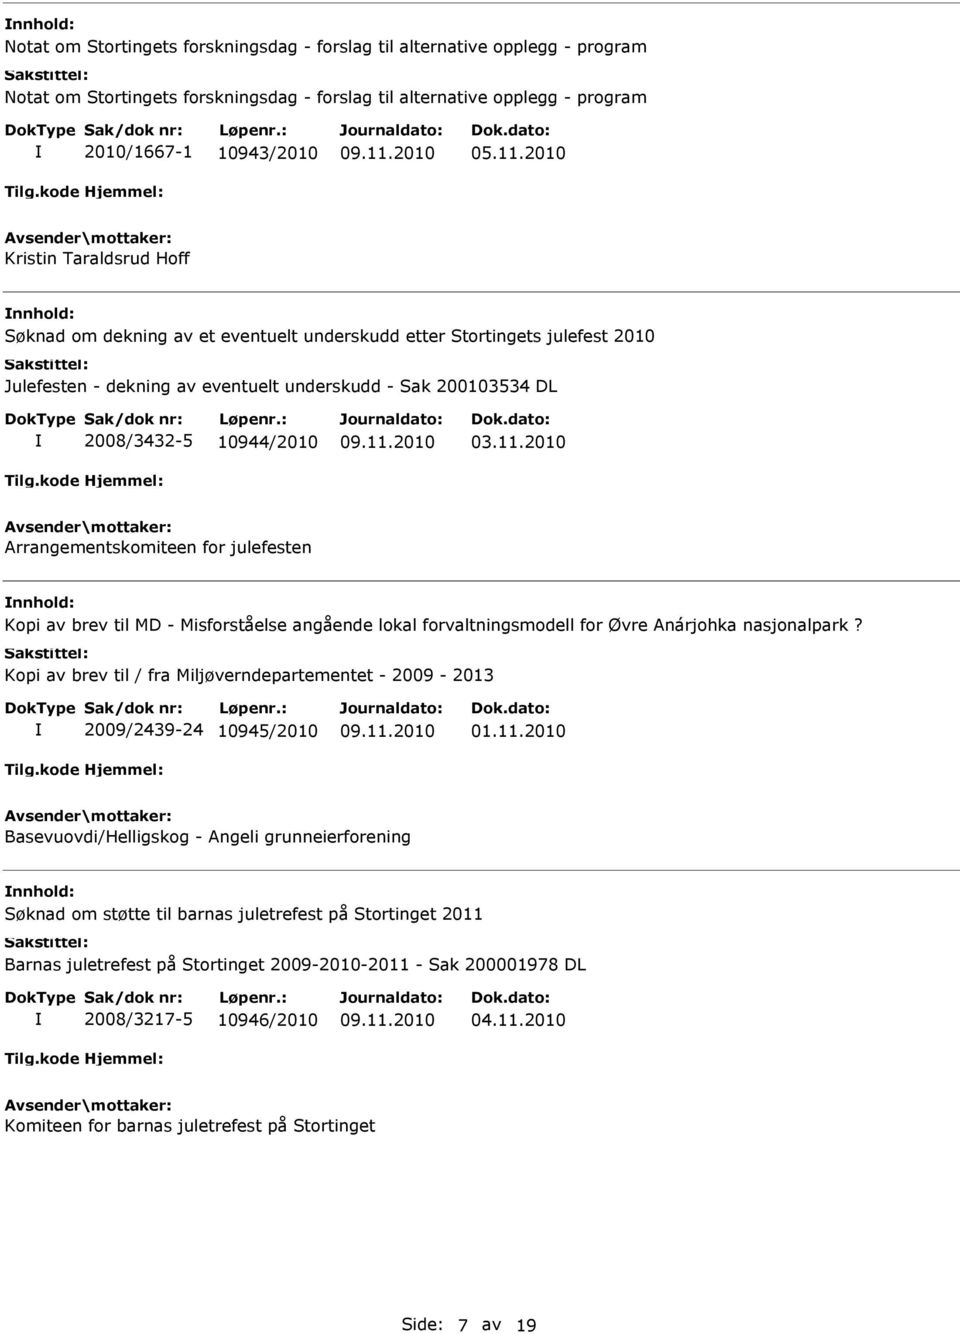 2010 Arrangementskomiteen for julefesten Kopi av brev til MD - Misforståelse angående lokal forvaltningsmodell for Øvre Anárjohka nasjonalpark?